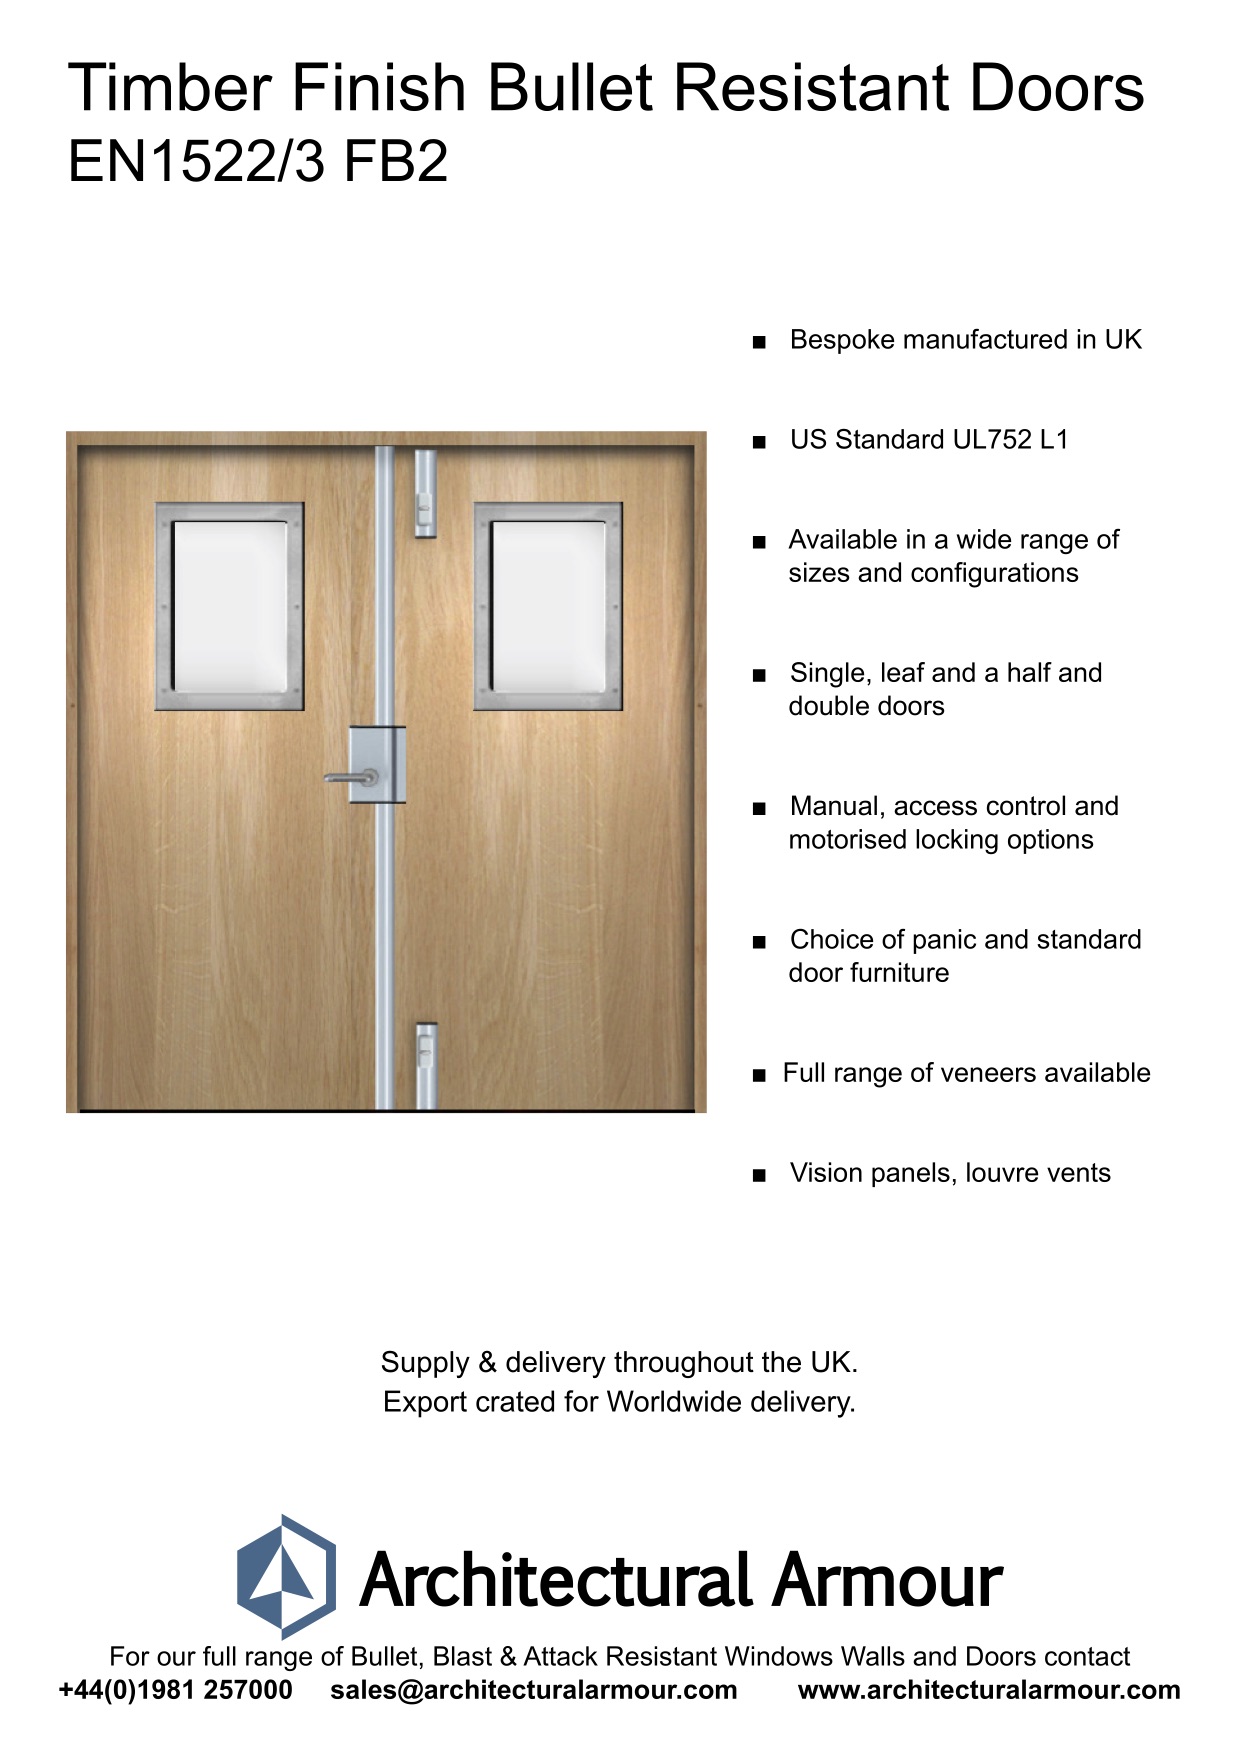 EN1522-3-FB2-Bulletproof-Doors-Vision-Panels